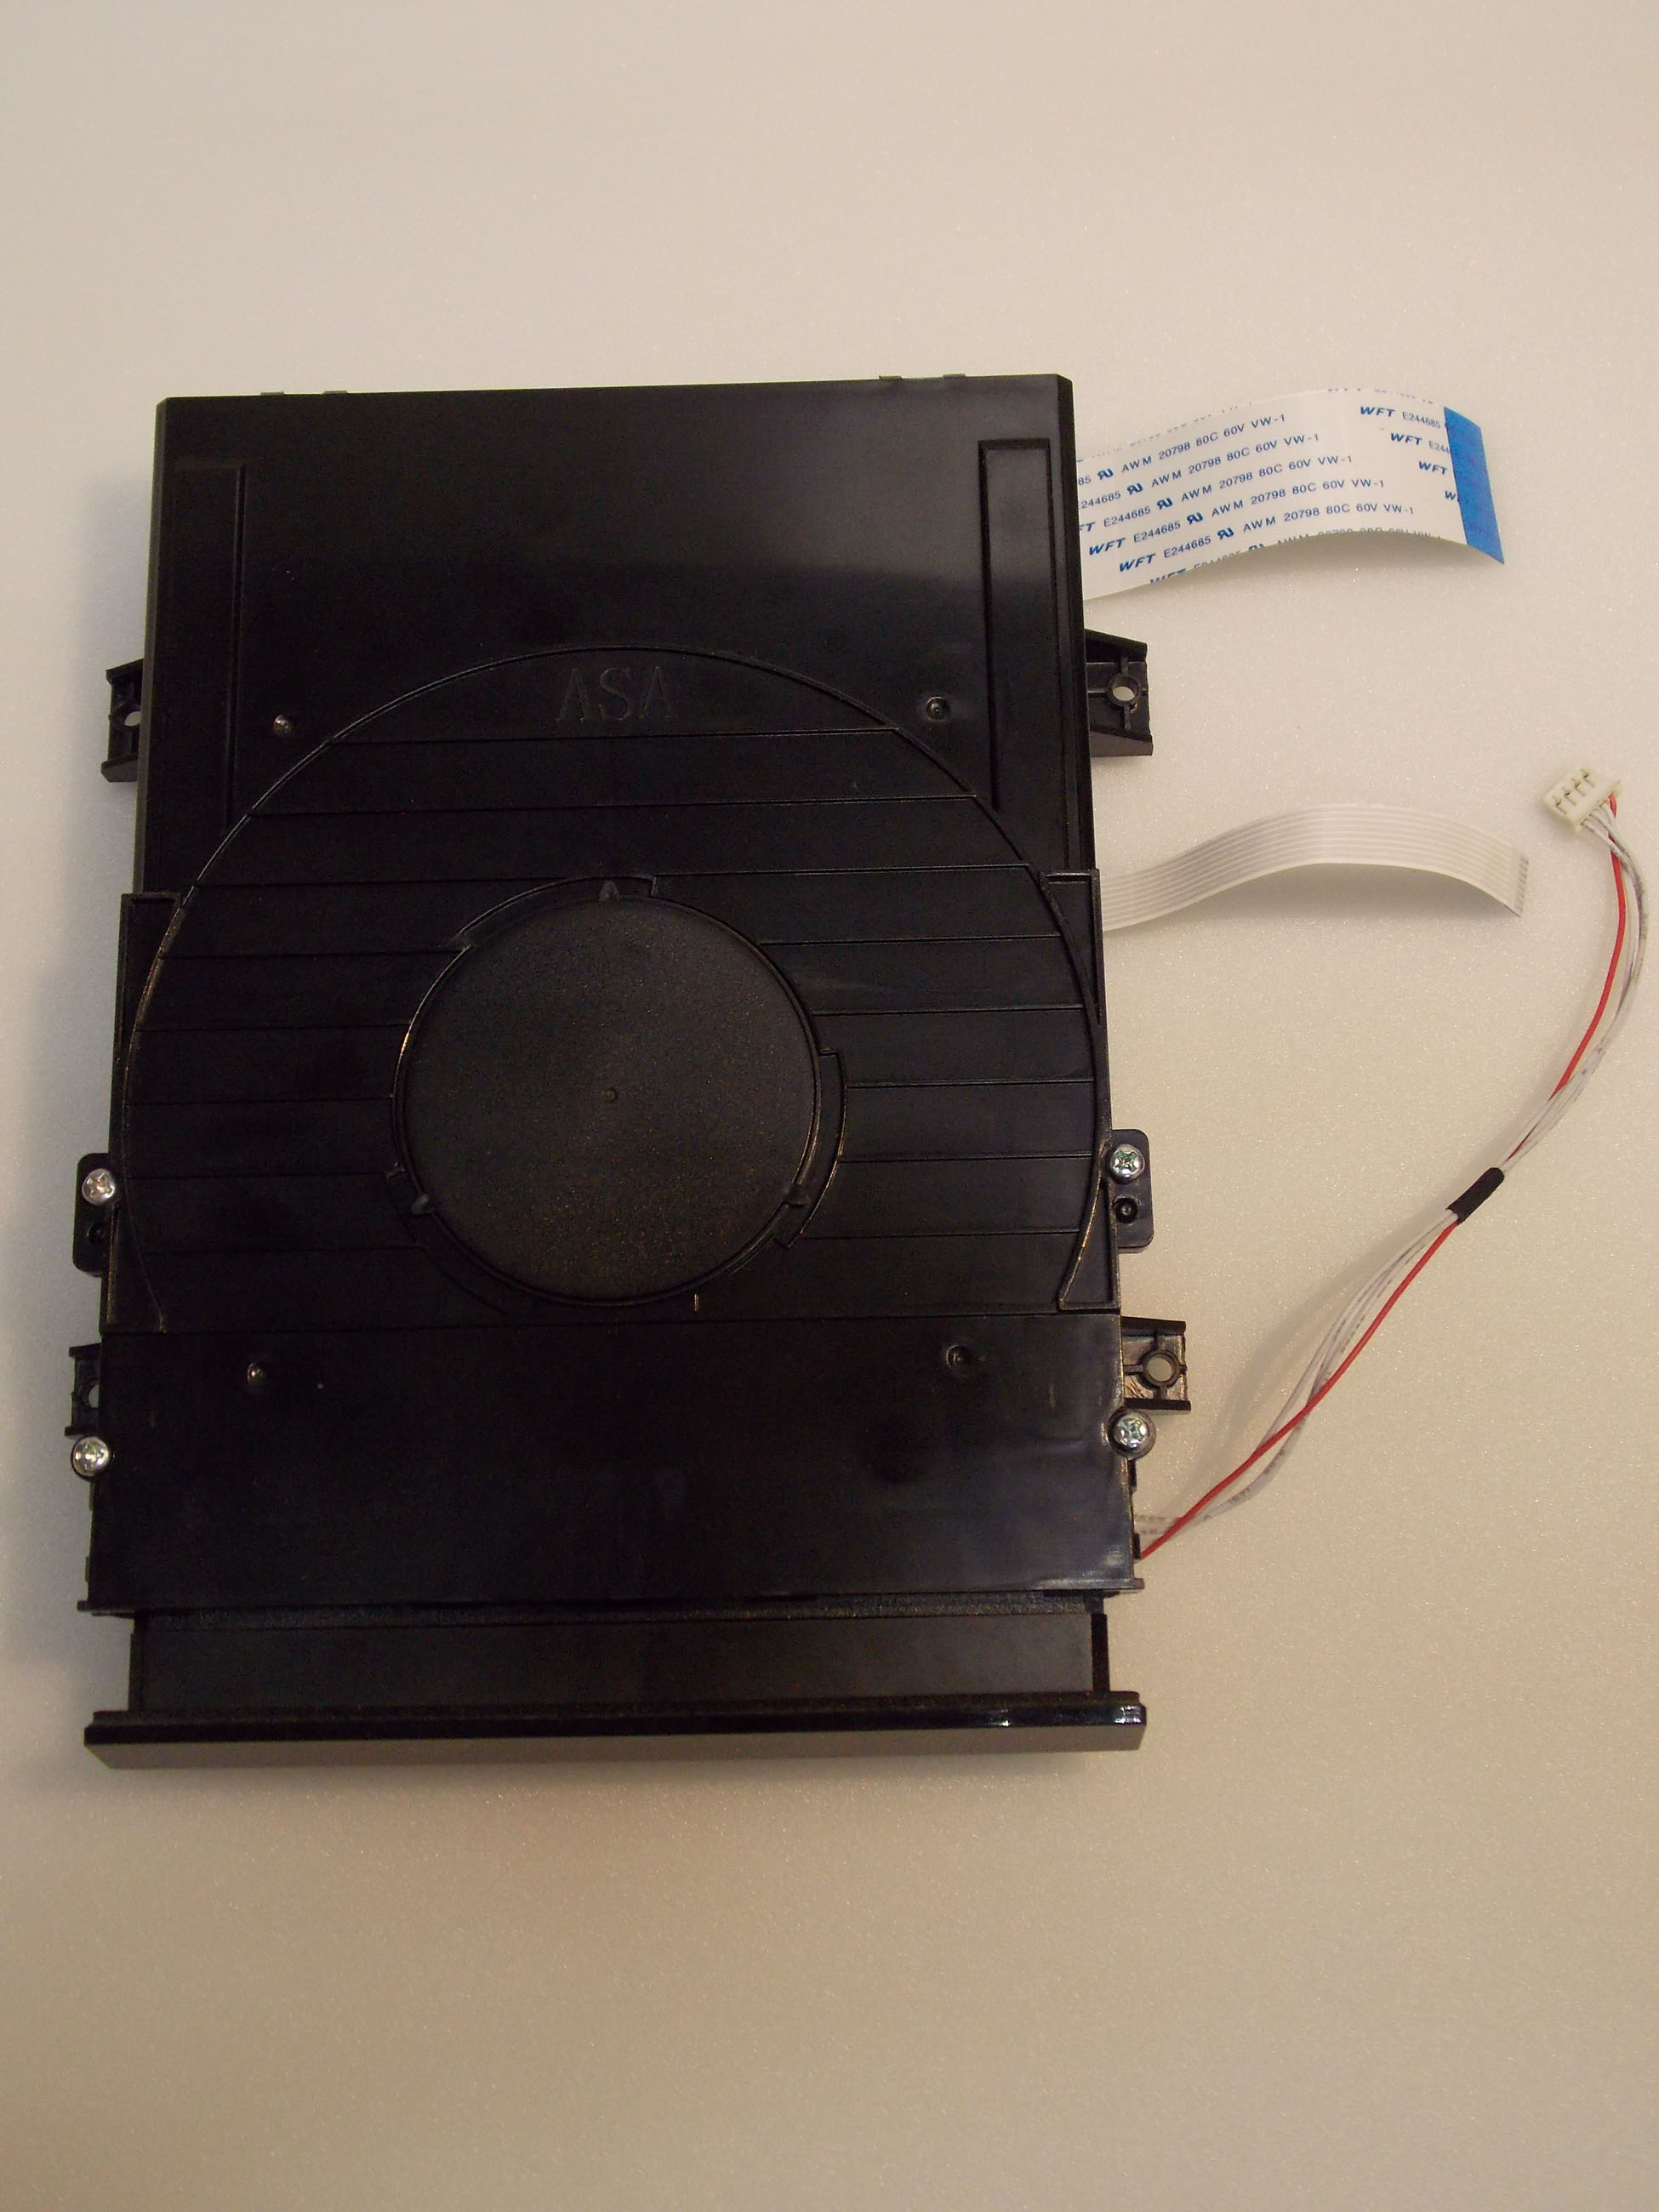 Привод дисков Blu-Ray Disc от Philips BDP3385K